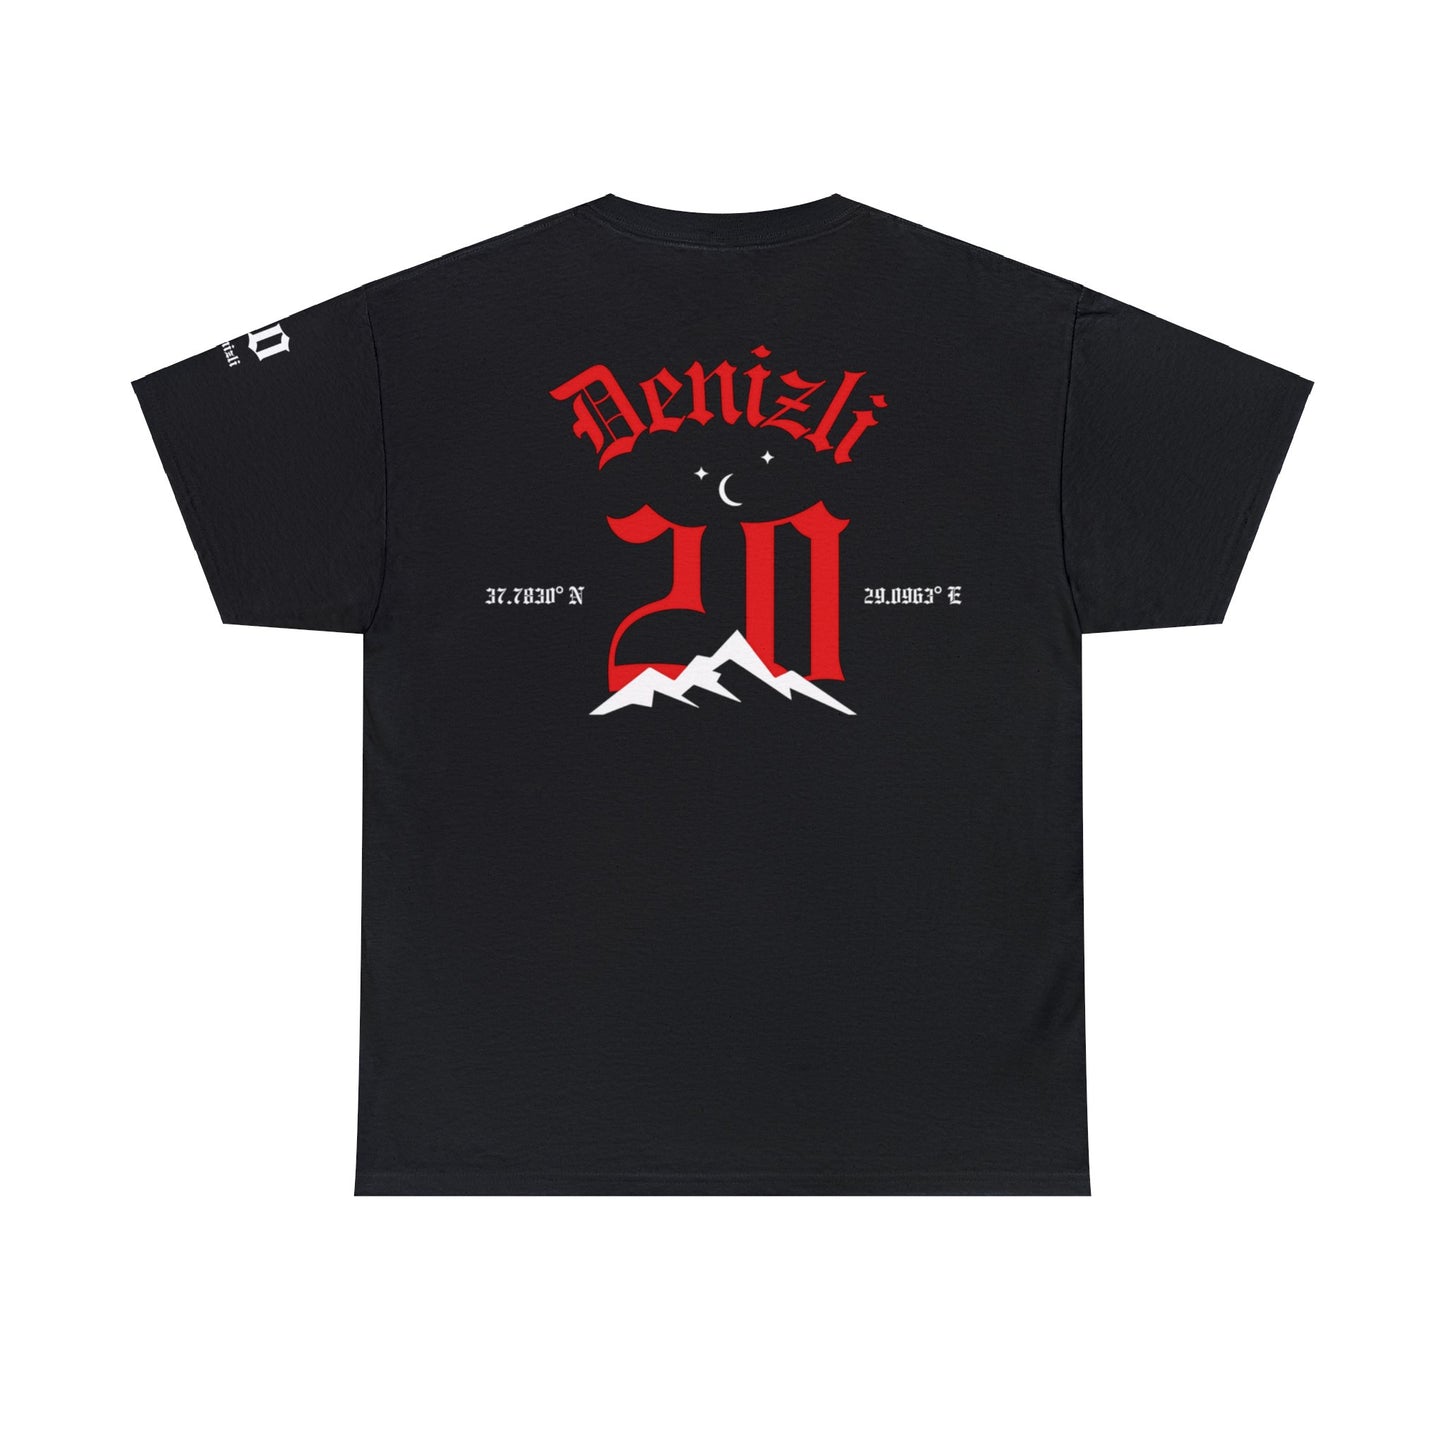 Şehirim - 20 Denizli - T-Shirt - Back Print - Black